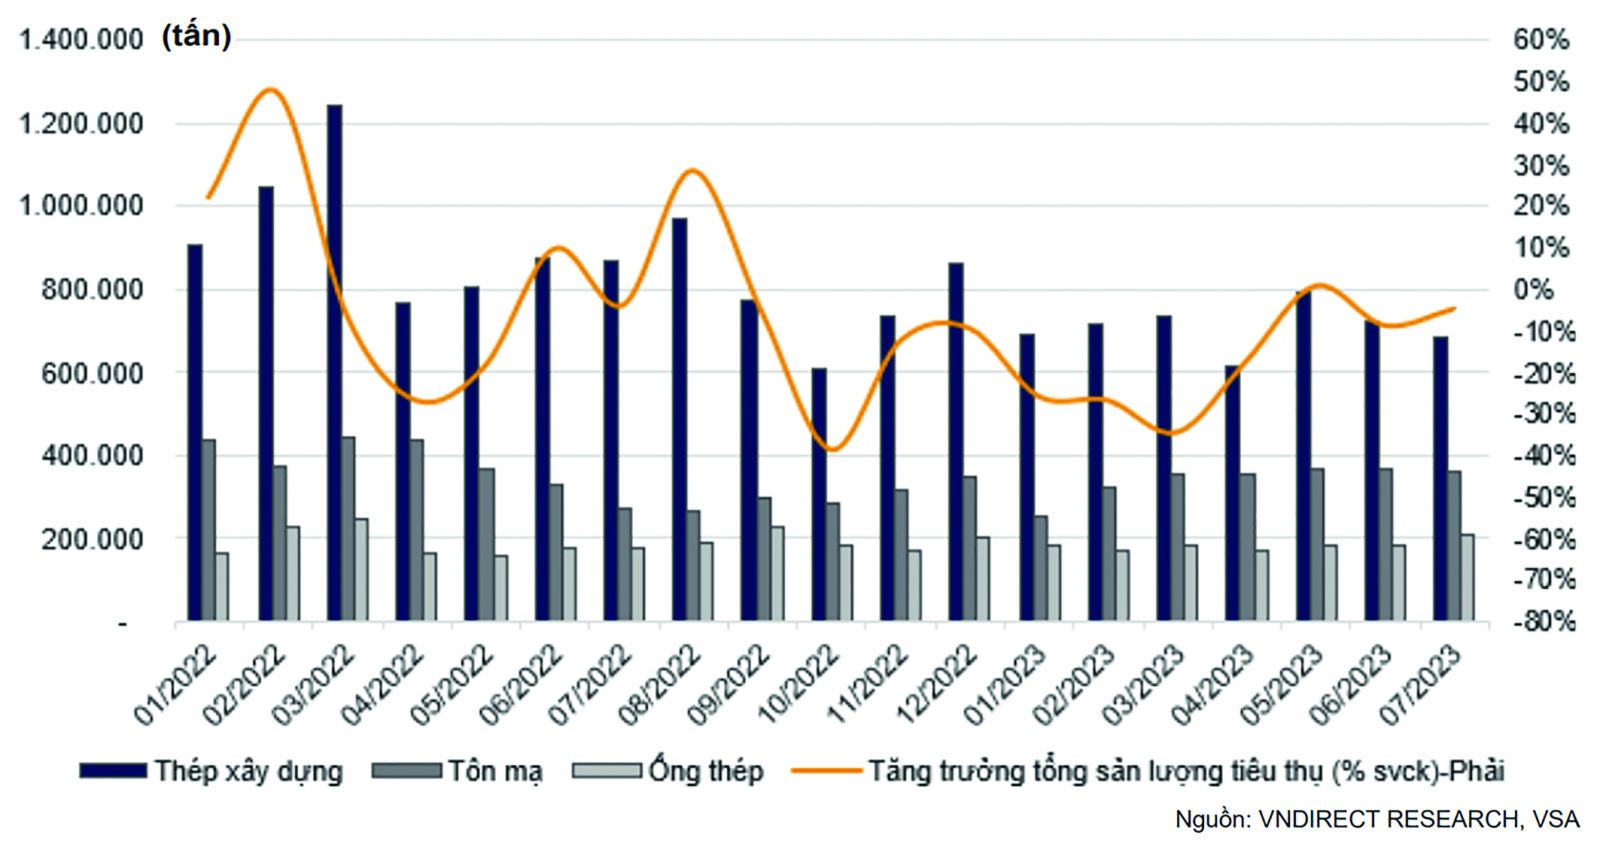  Sản lượng tiêu thụ thép Việt Nam theo tháng. Nguồn: VNDirect, VSA